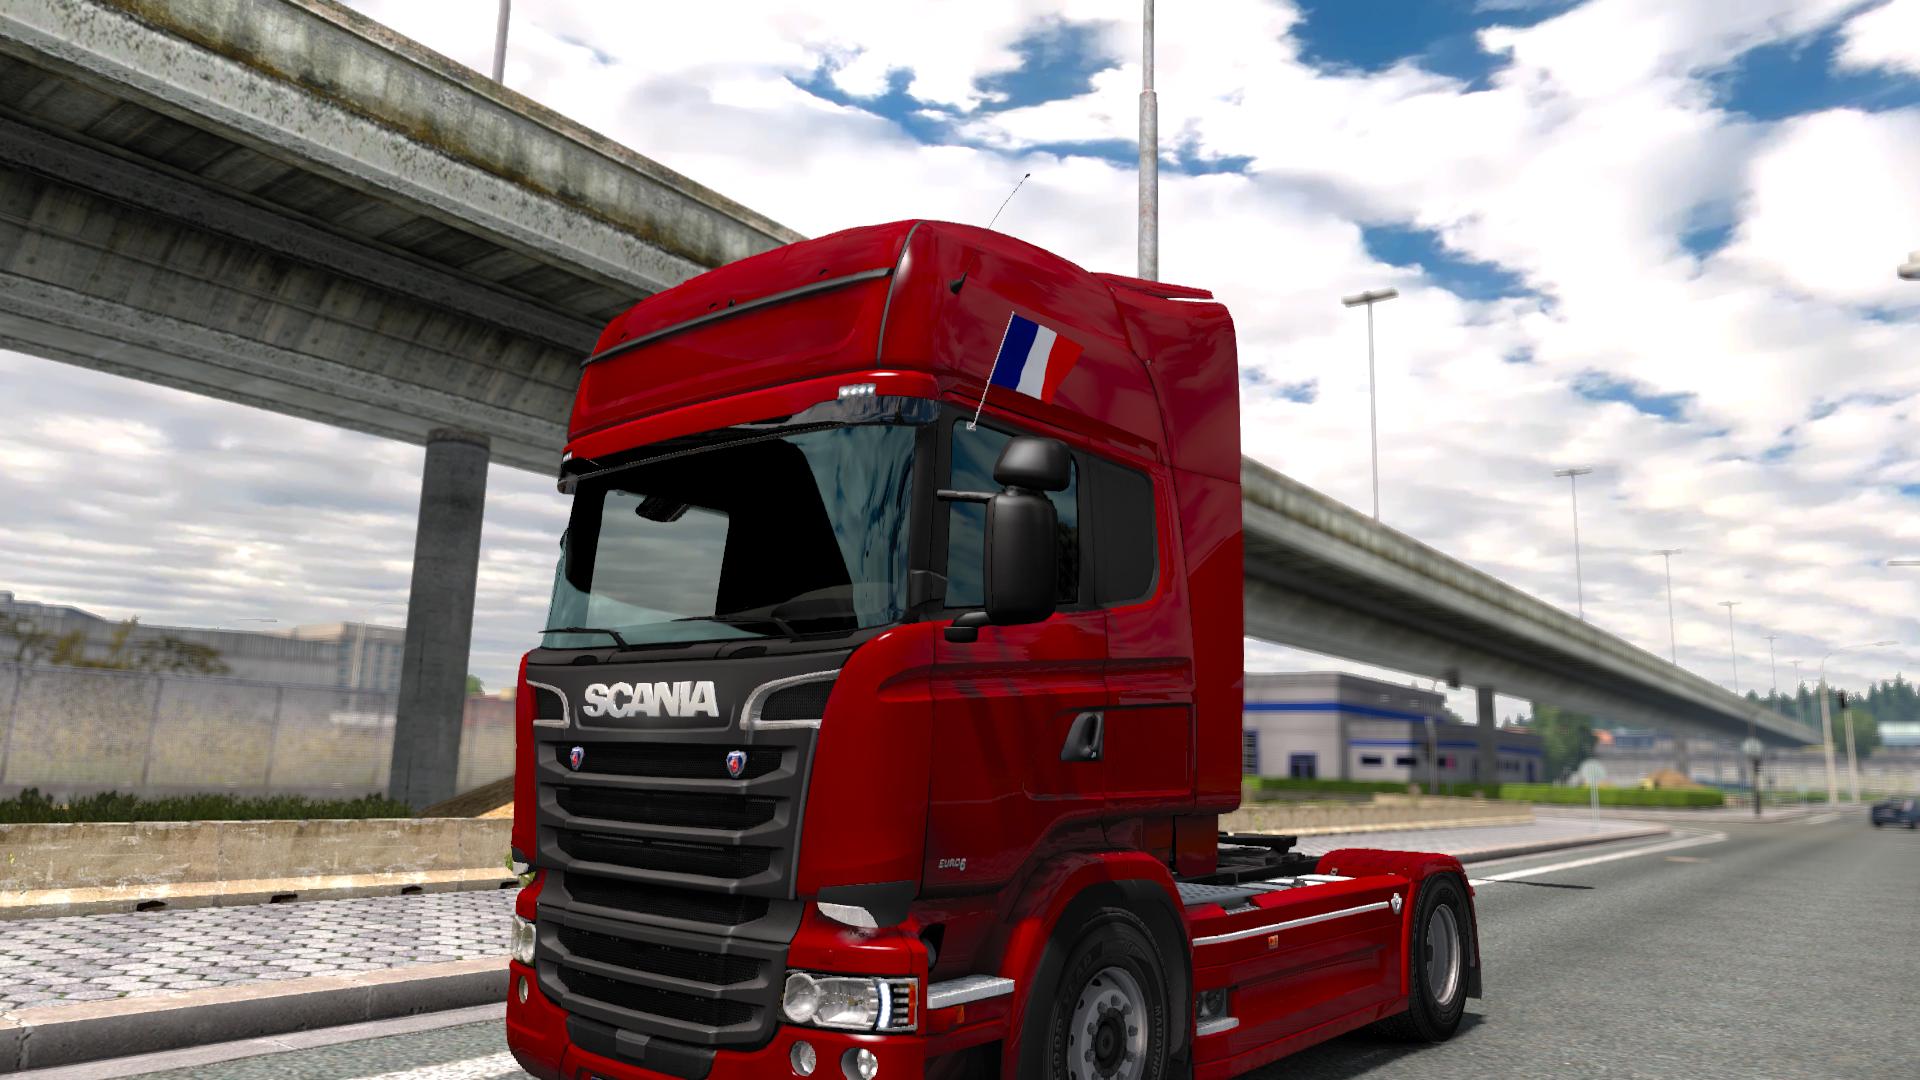 Euro truck simulator 2 update